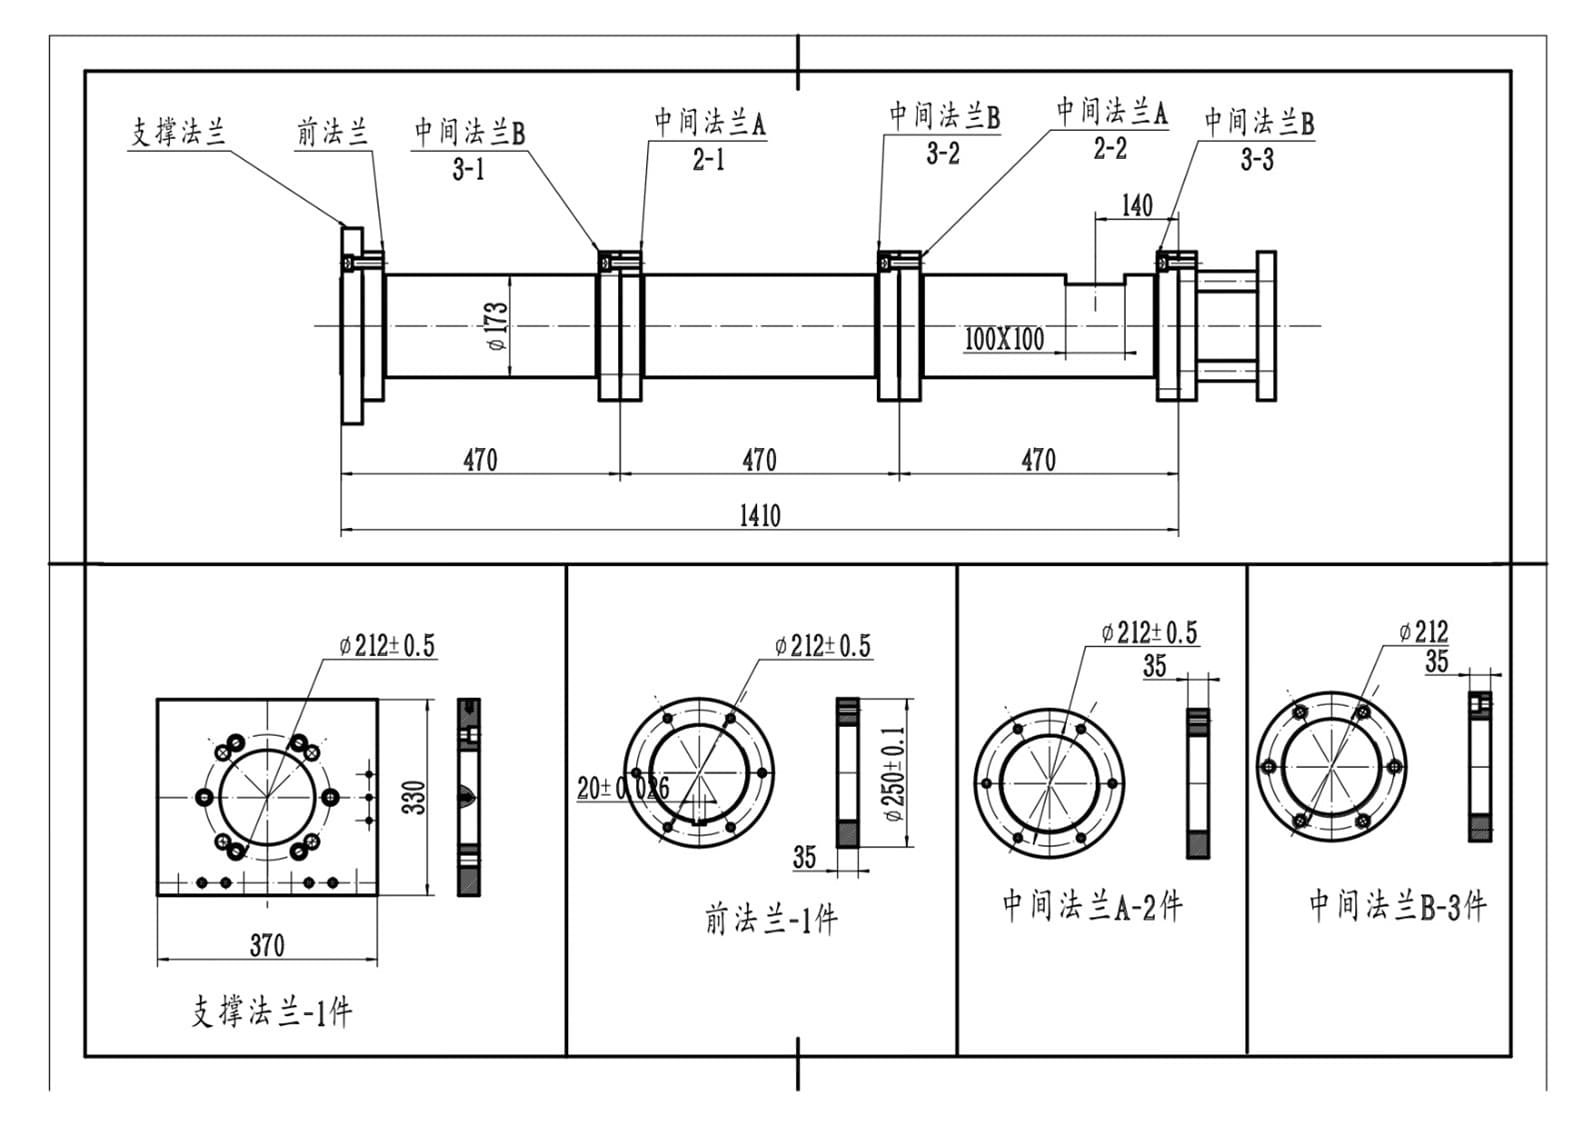 Схема 1. Двухшнековые экструдеры DG75-II